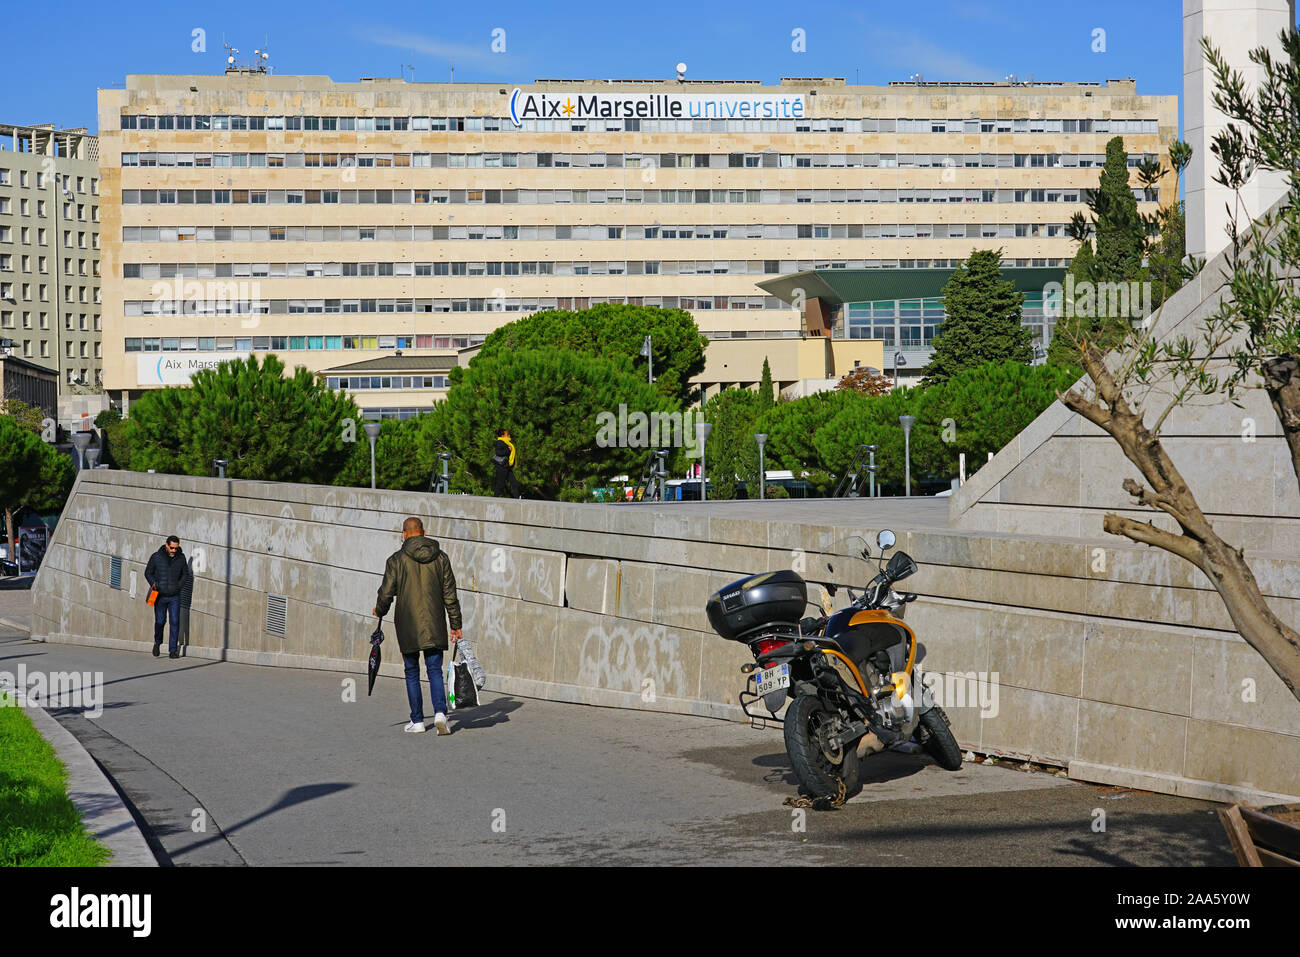 MARSEILLE, FRANCE -13 nov 2019- Vue sur le campus Saint-Charles de l'Université Aix Marseille Universite près de la gare à Marseille, Franc Banque D'Images